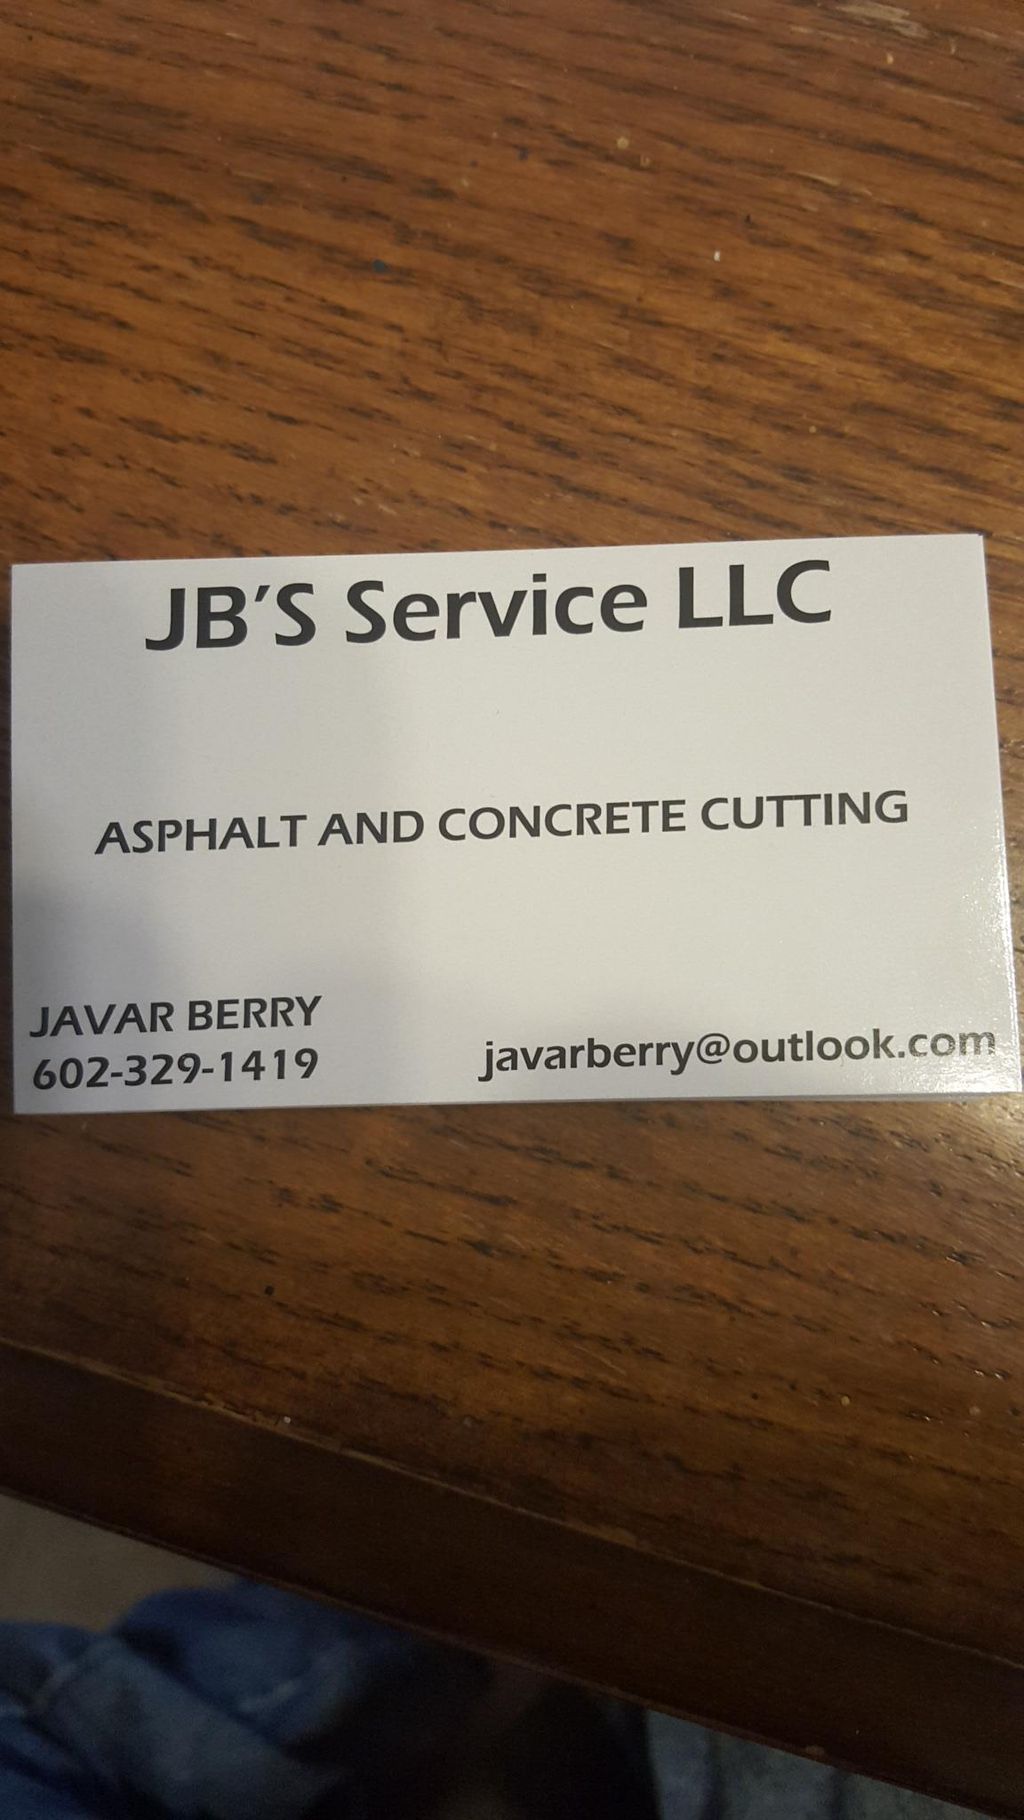 JB's Service LLC